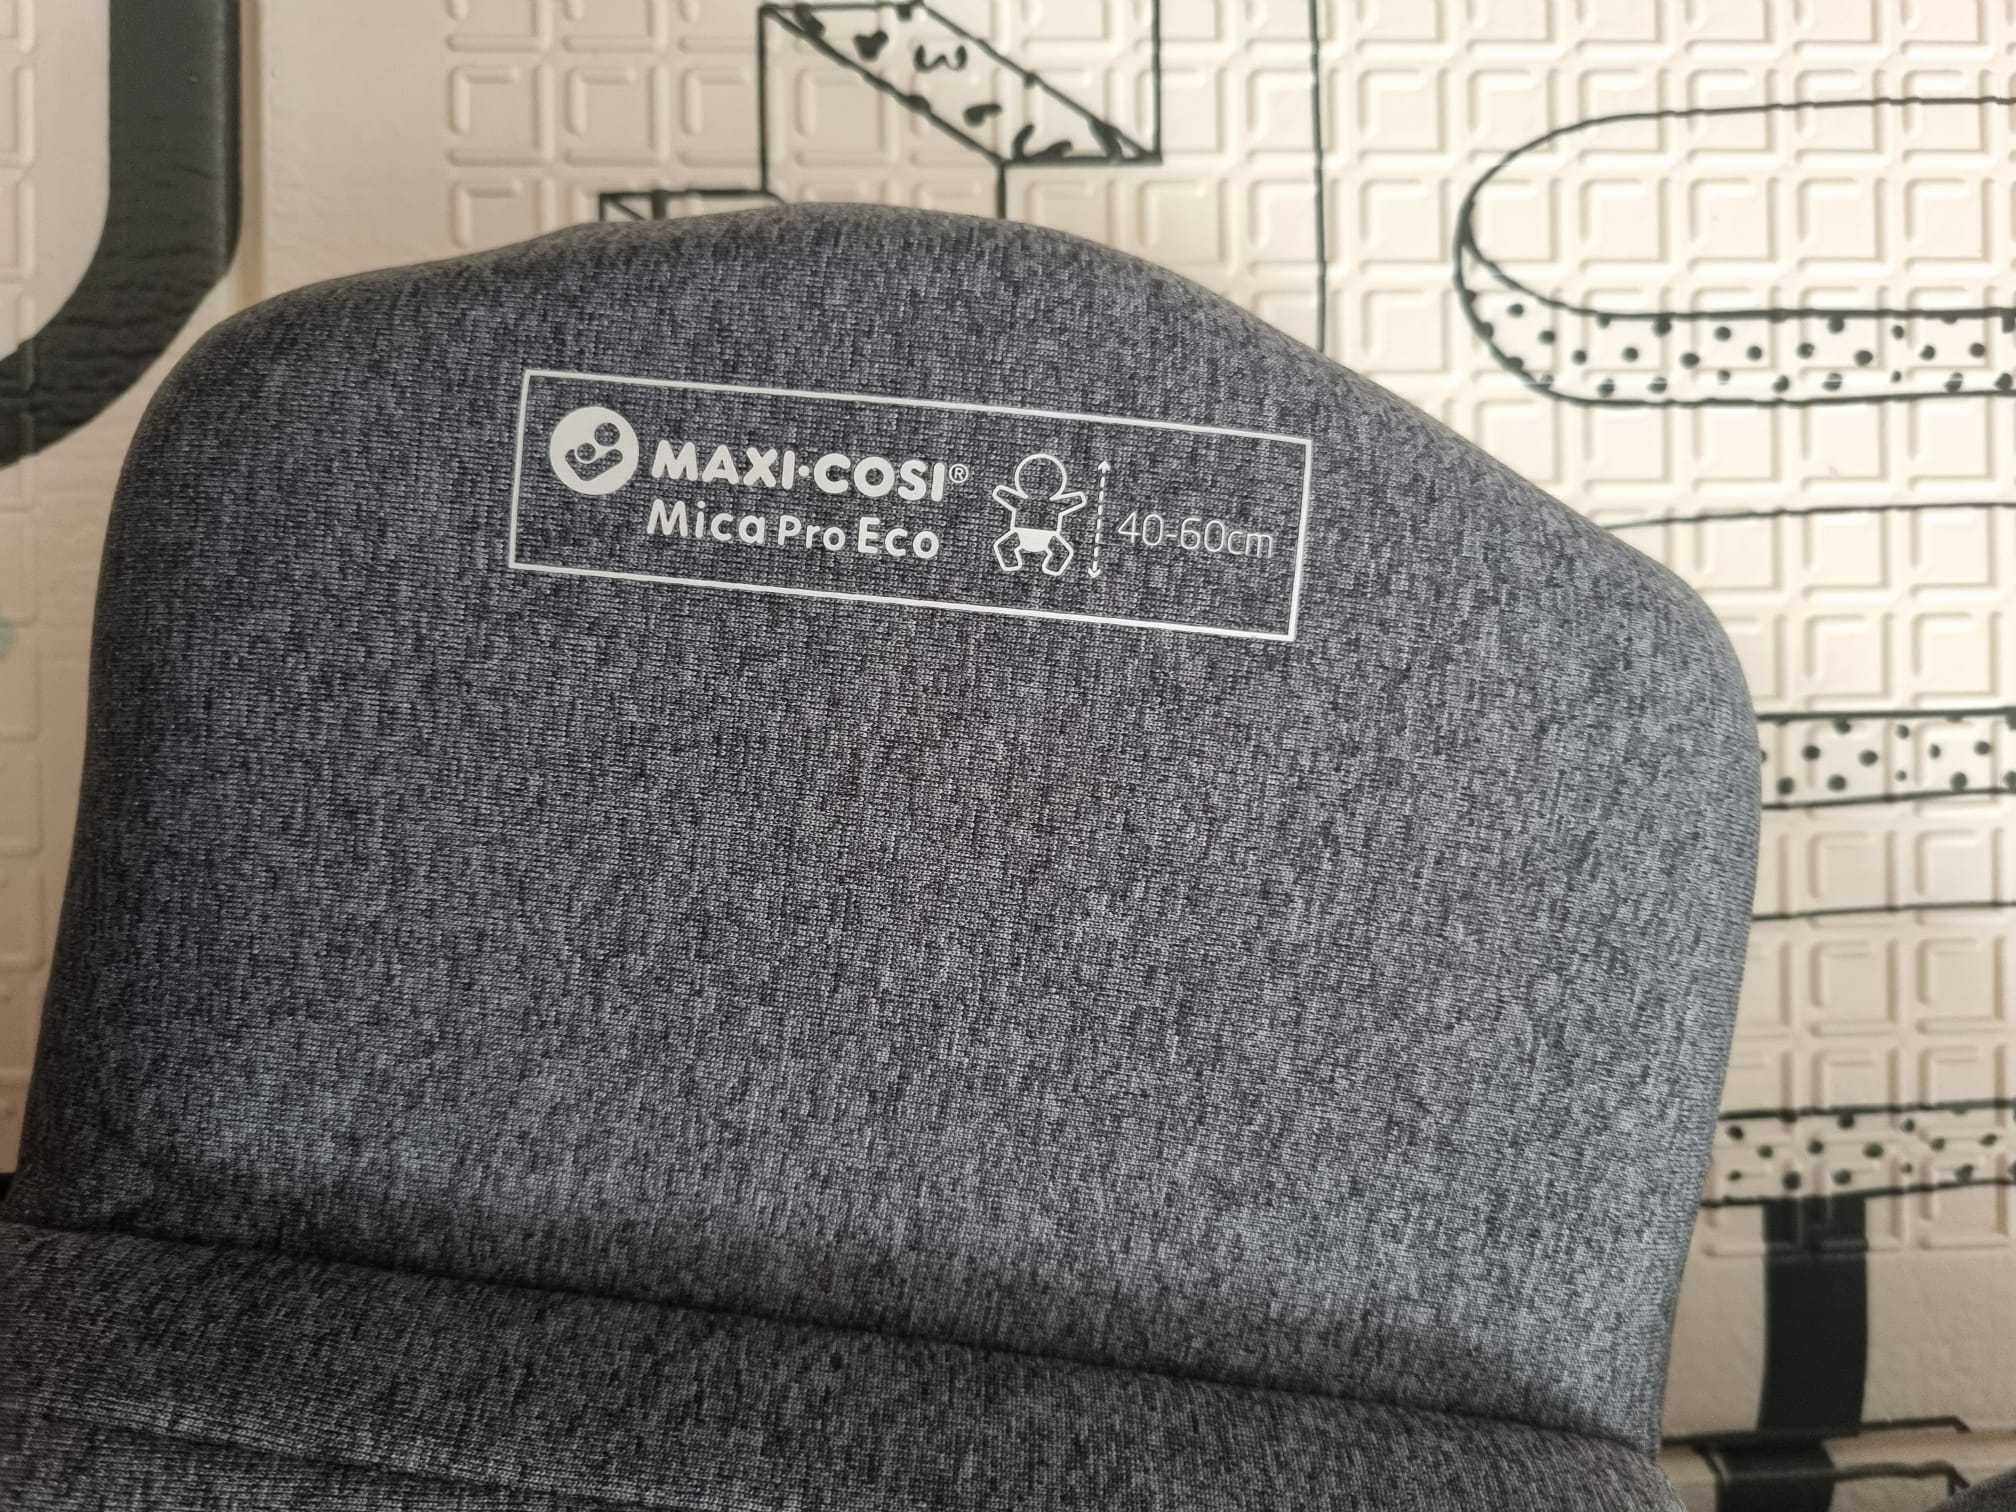 Cadeira Mica Pro Eco I-Size da Maxi Cosi